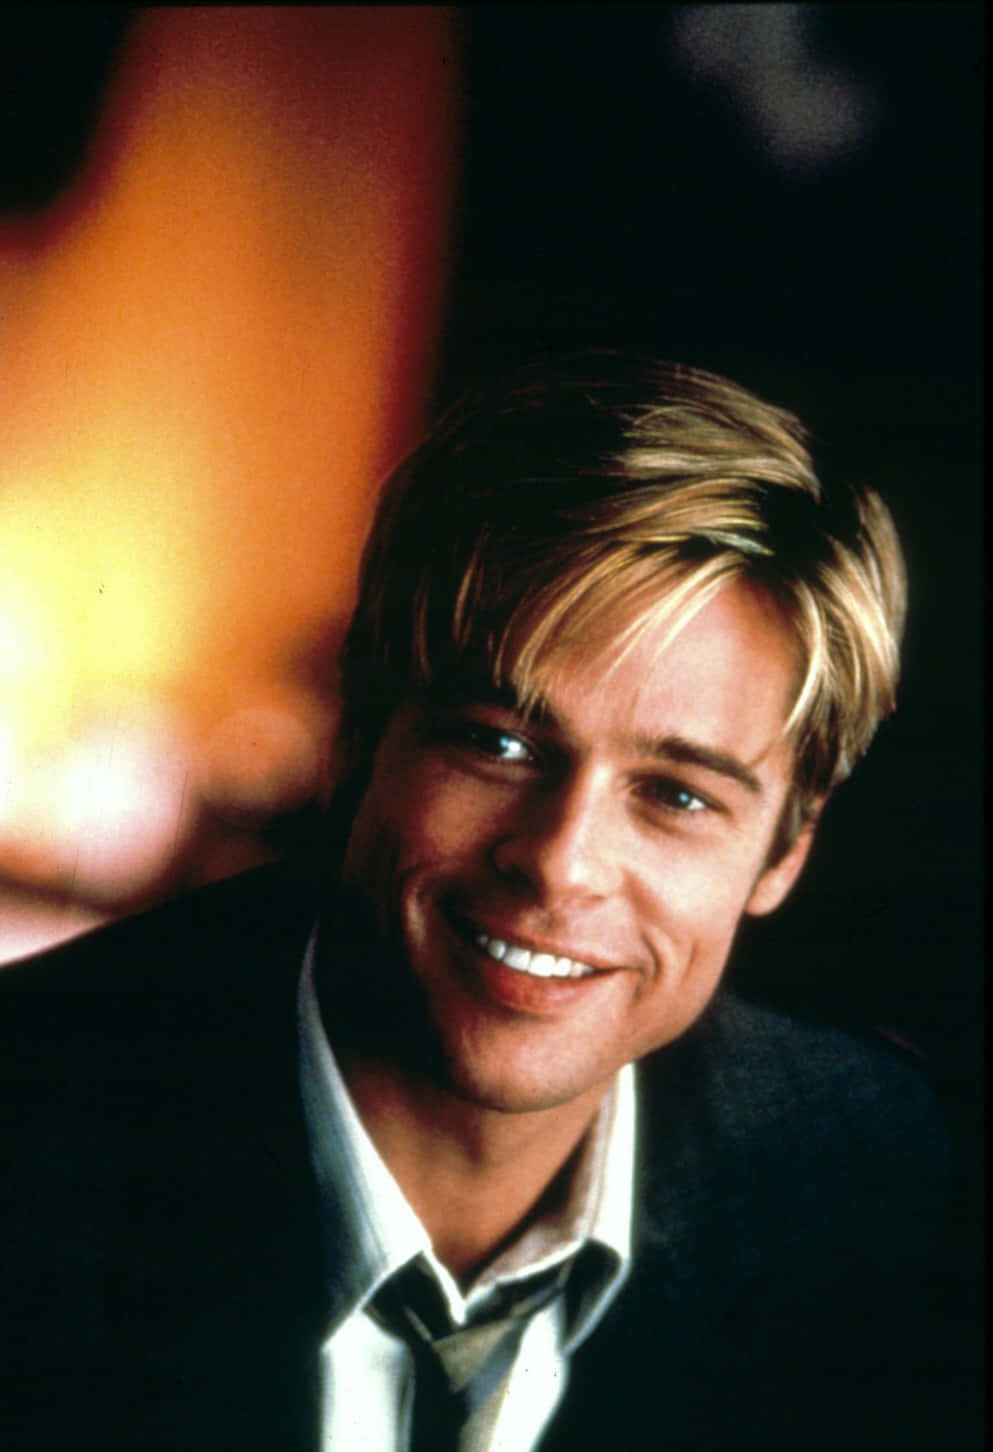 Hollywoodikonen Brad Pitt